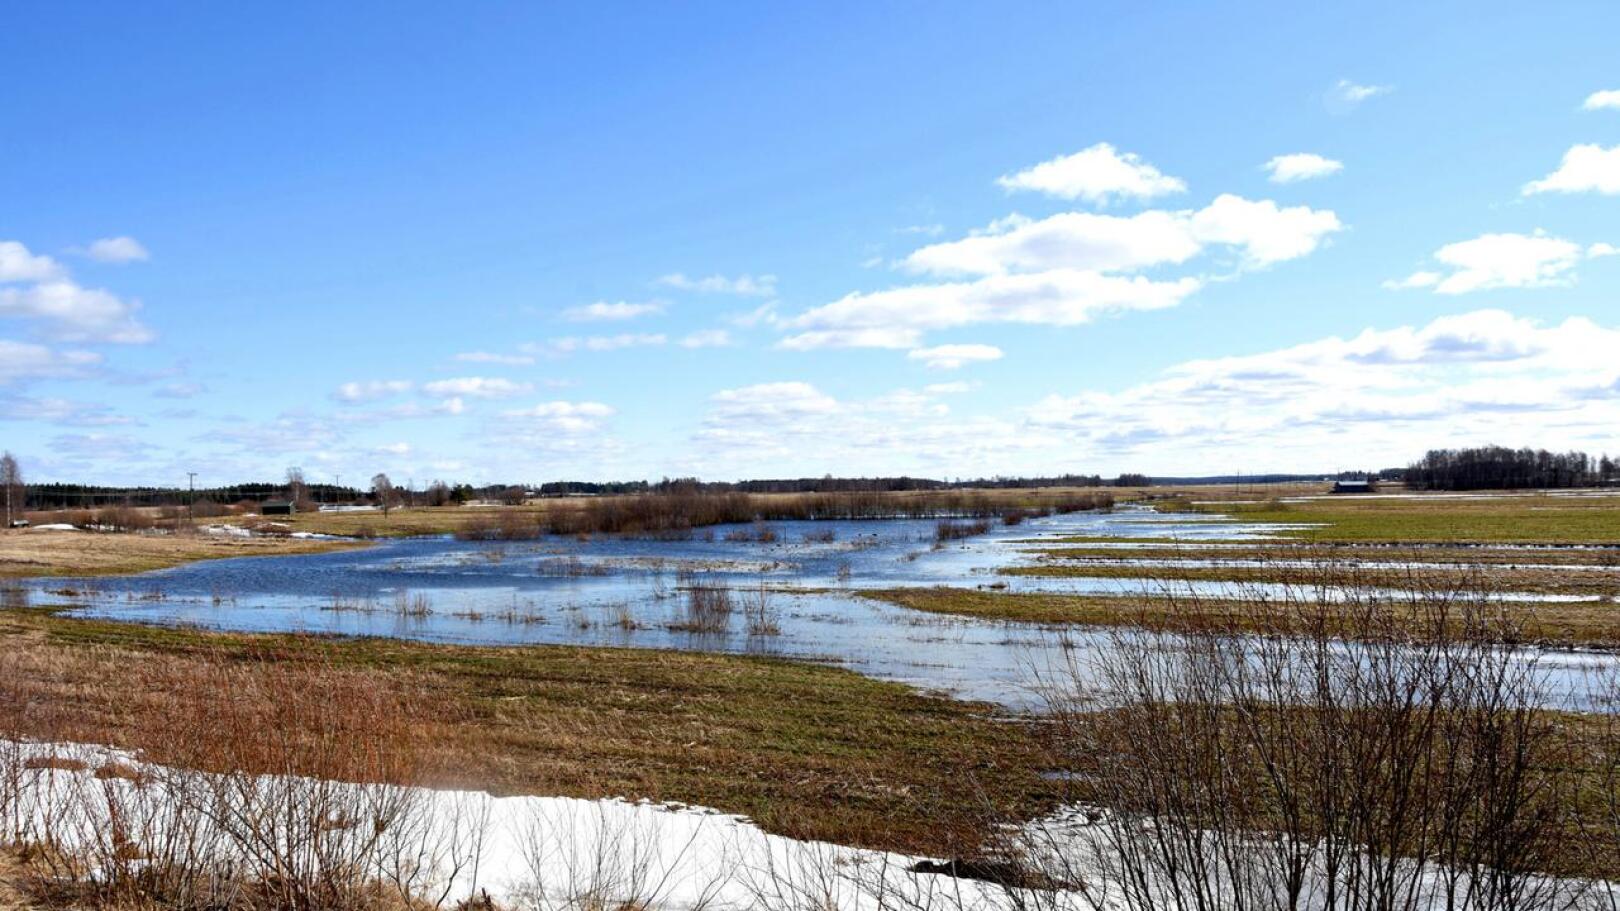 Keväälle 2022 ennakoidaan keskimääräistä suurempaa tulvaa. Kuvassa huhtikuun 2021 tulvia Vattukylältä.